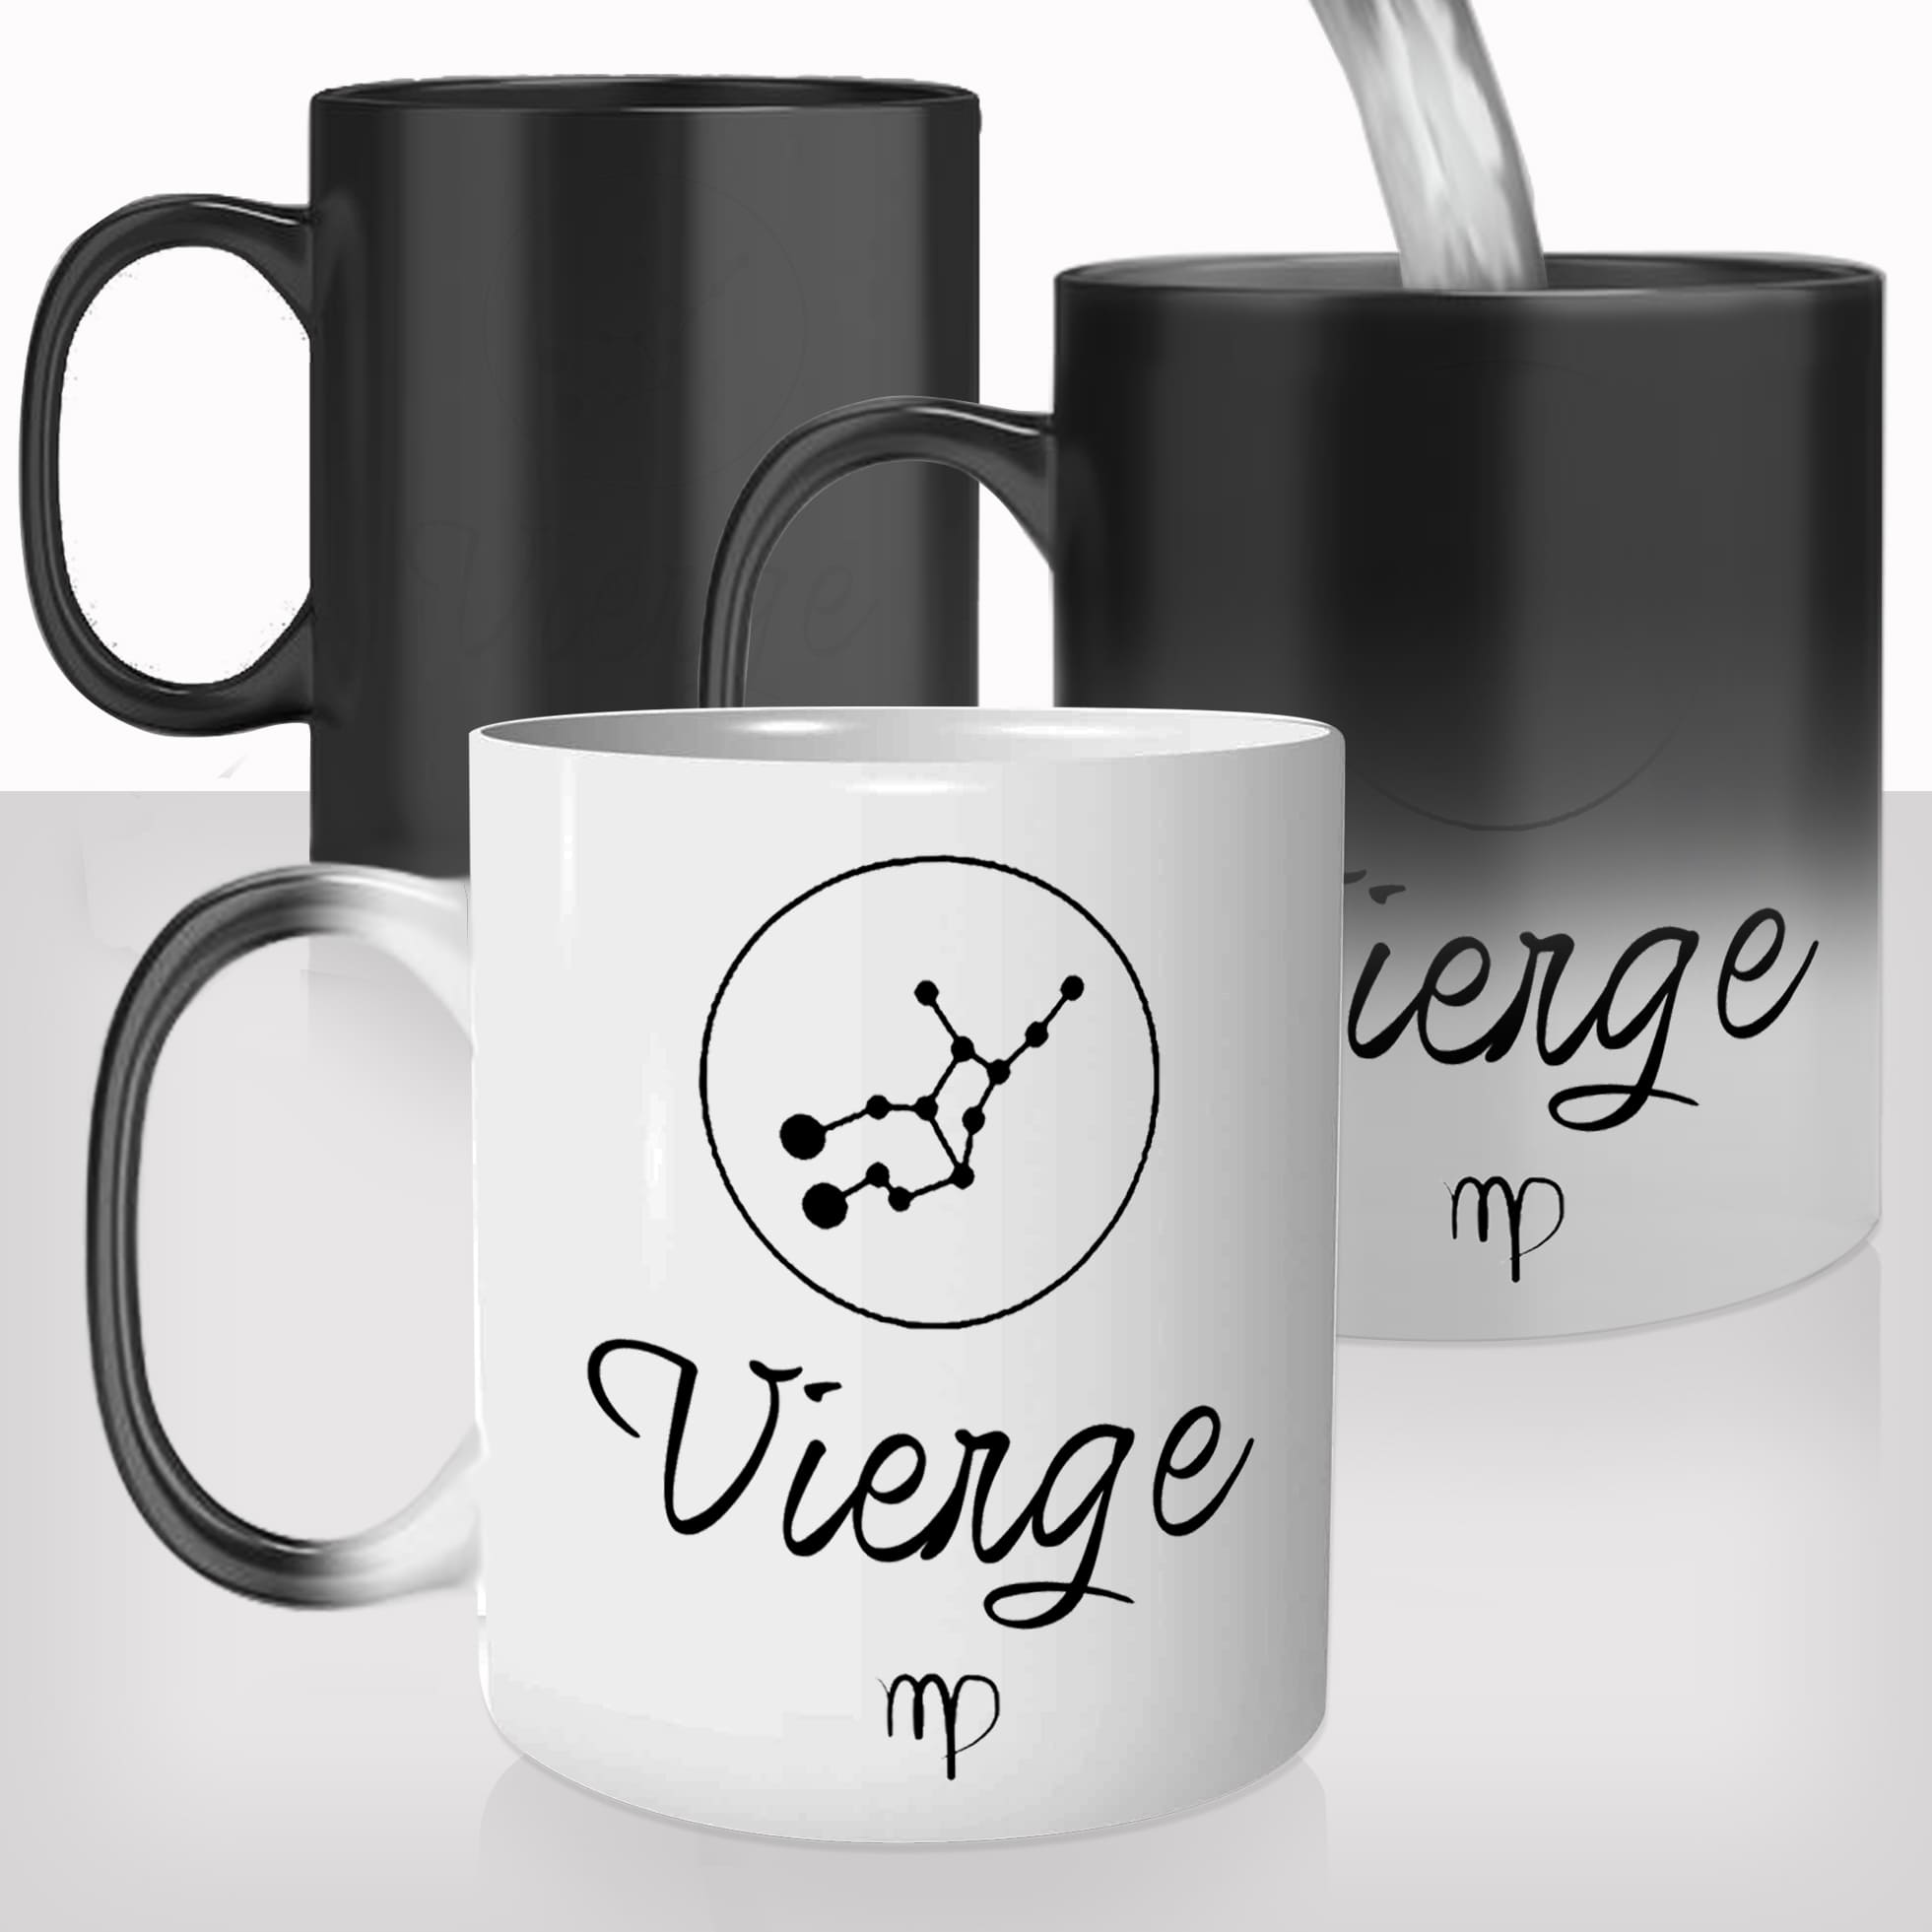 mug-magique-personnalisable-thermo-reactif-thermique-signe-astrologique-constellation-etoiles-vierge-photo-personnalisable-cadeau-original